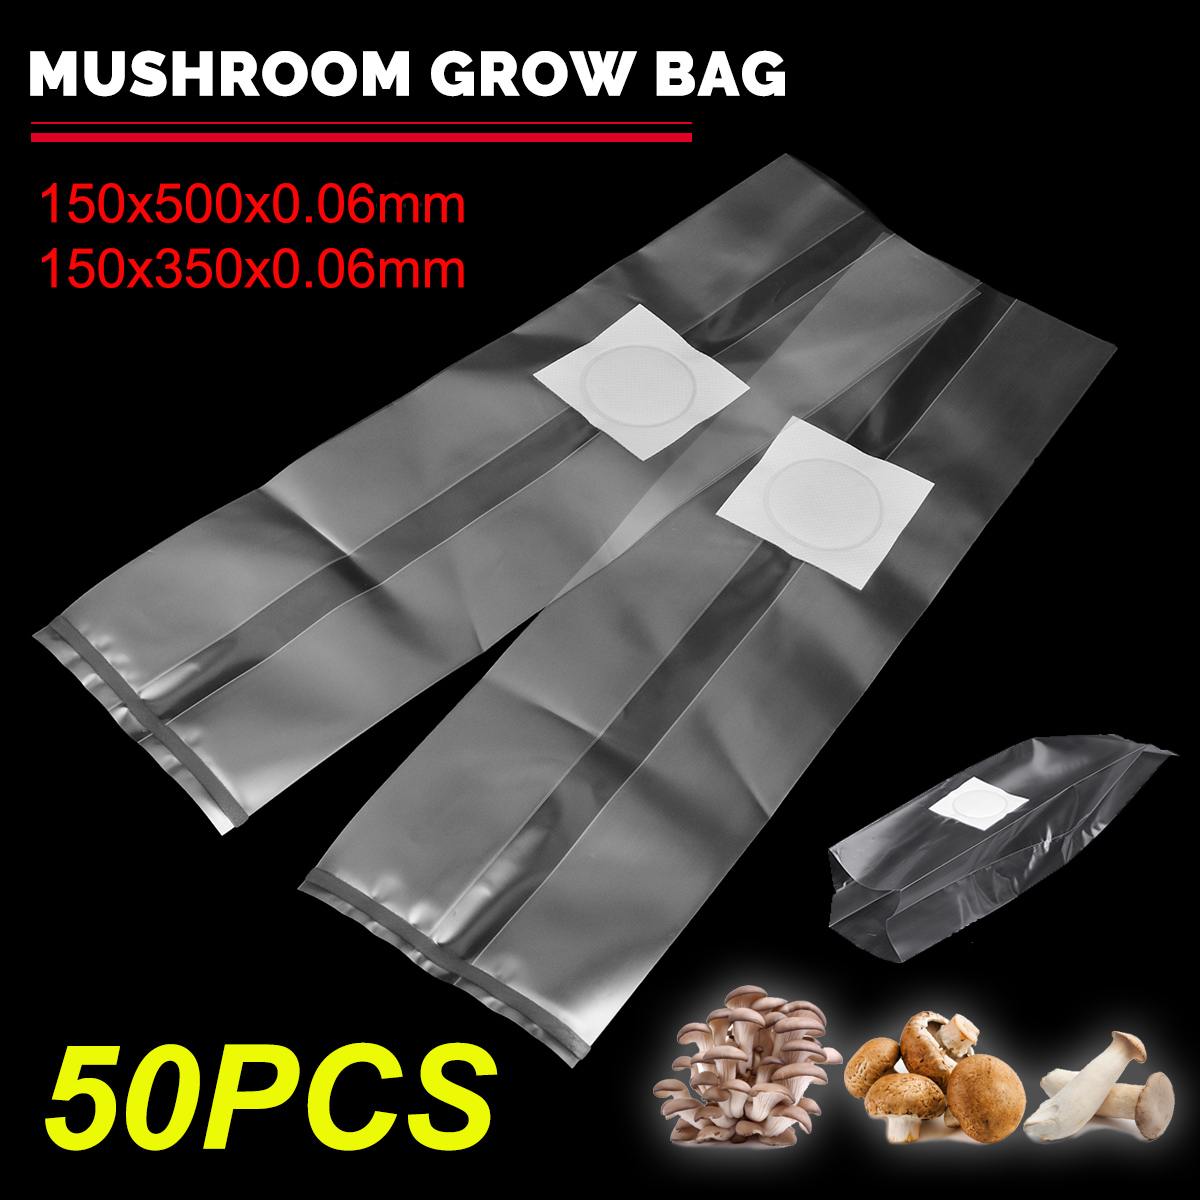 50Pcs PVC Mushroom Spawn Grow Bag 15x50/15x35cm Substrate High Temp Pre Sealable Garden Supplies Grow Bags Dropshipping